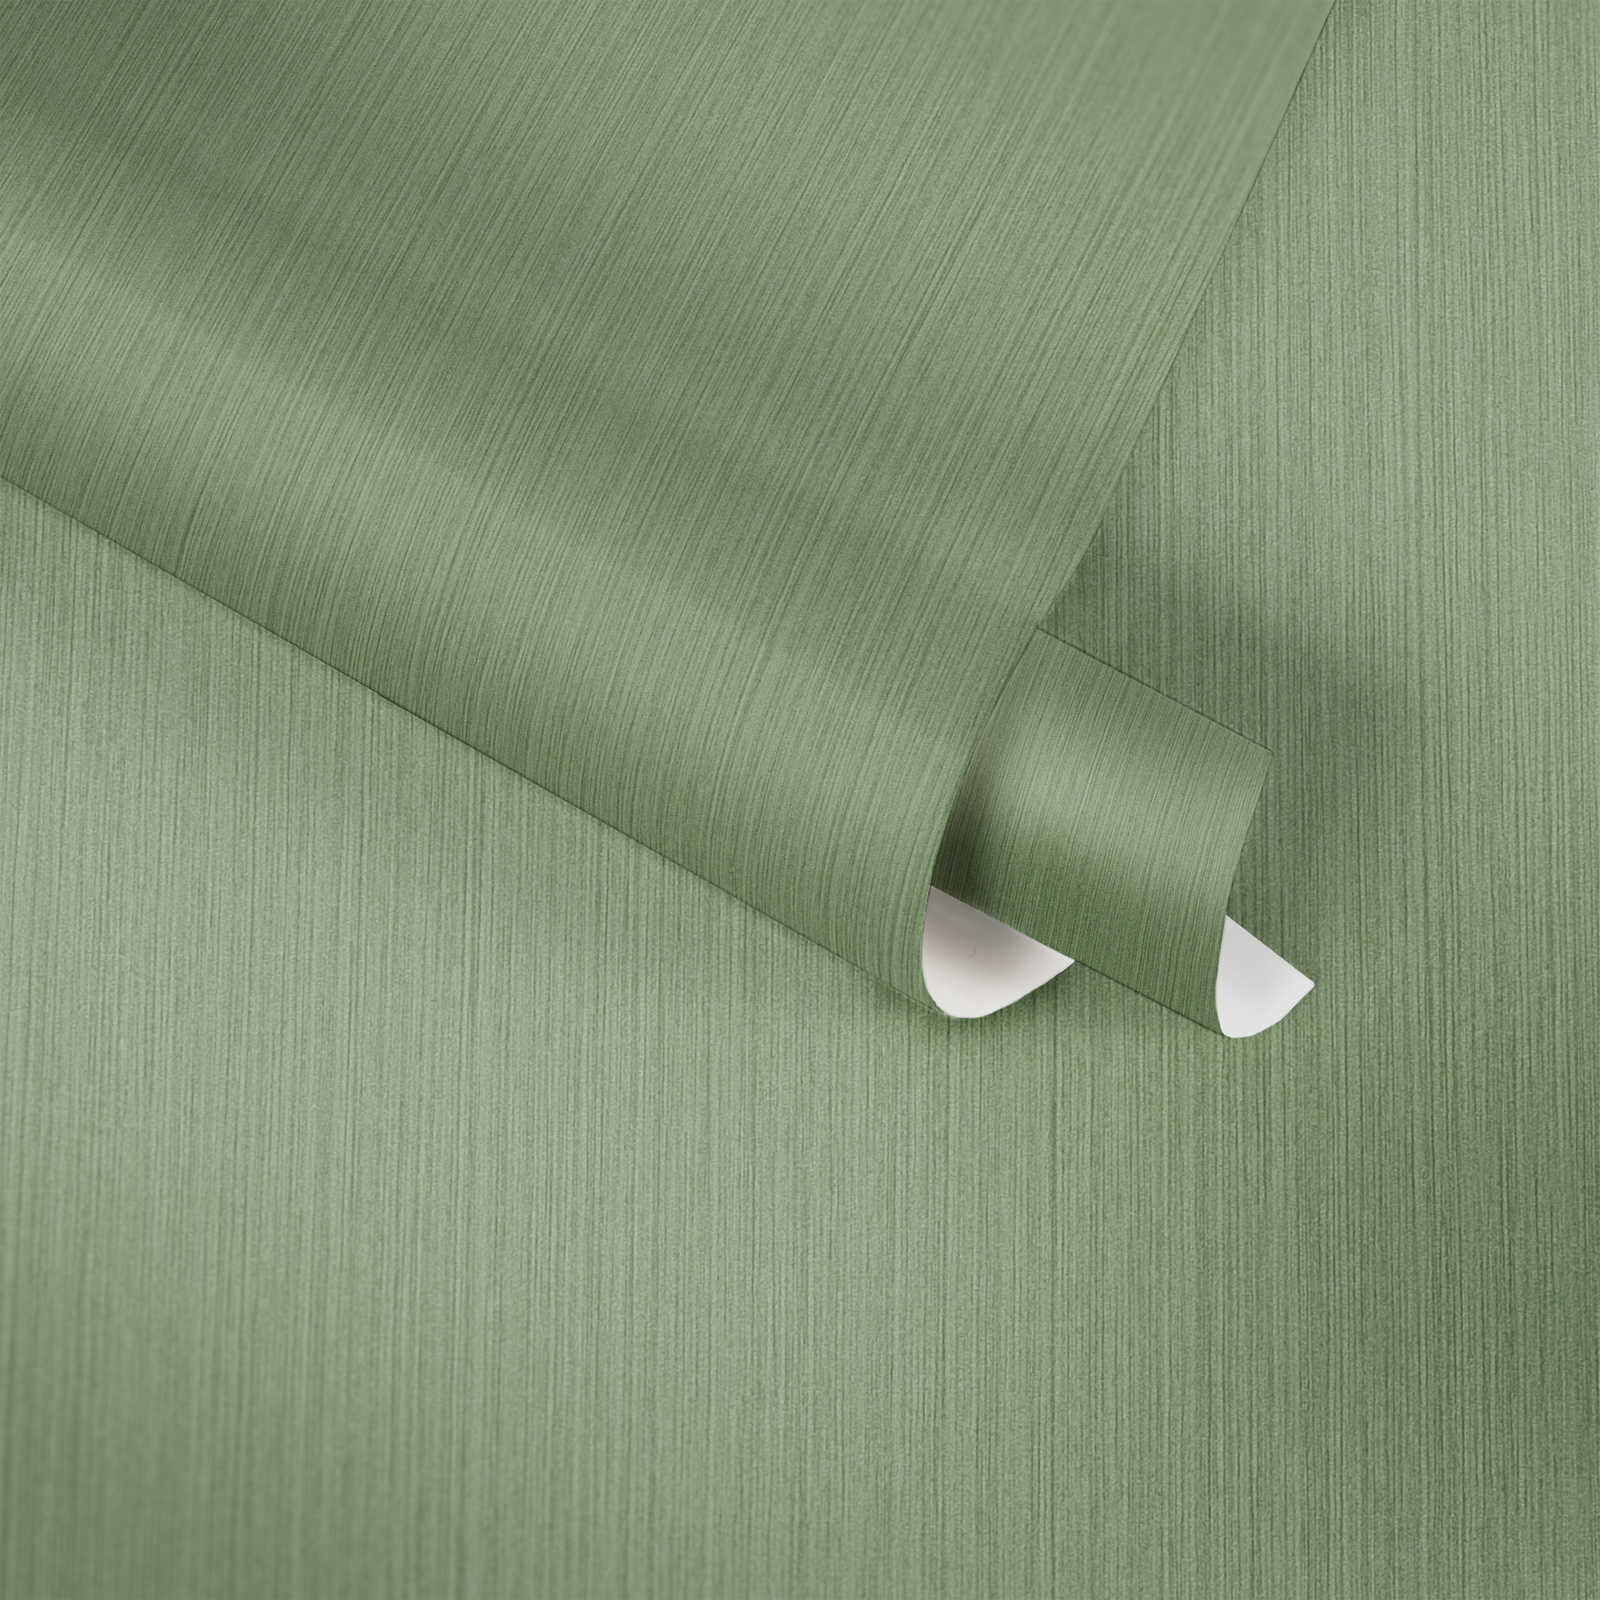             Papier peint uni vert avec effet textile chiné de MICHALSKY
        